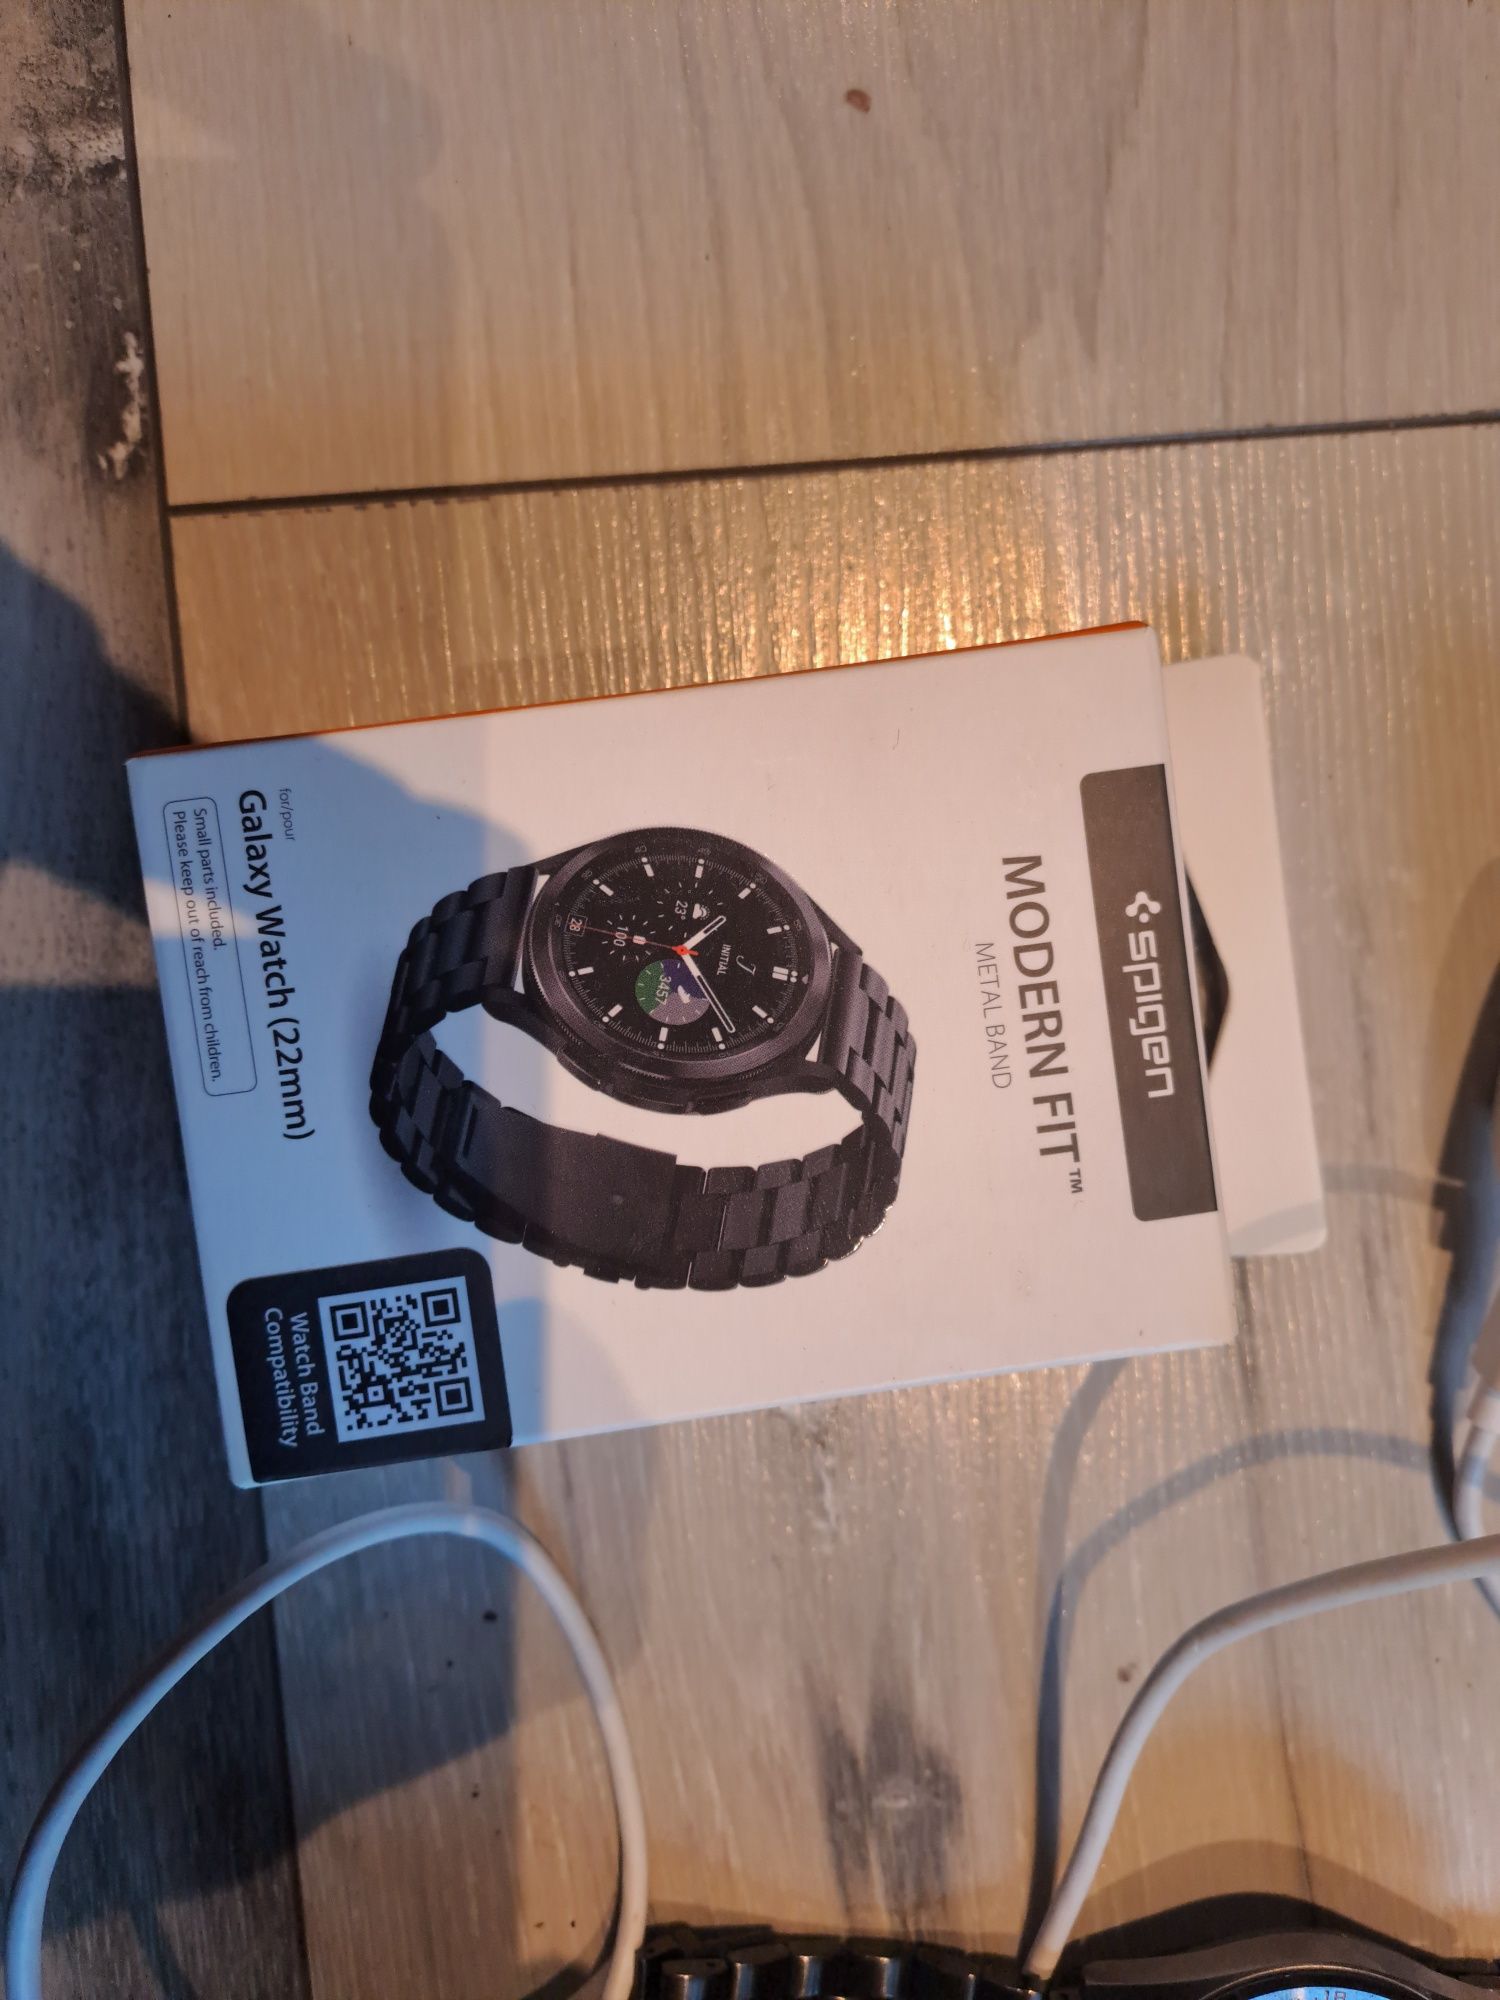 Smartwatch Huawei watch gt